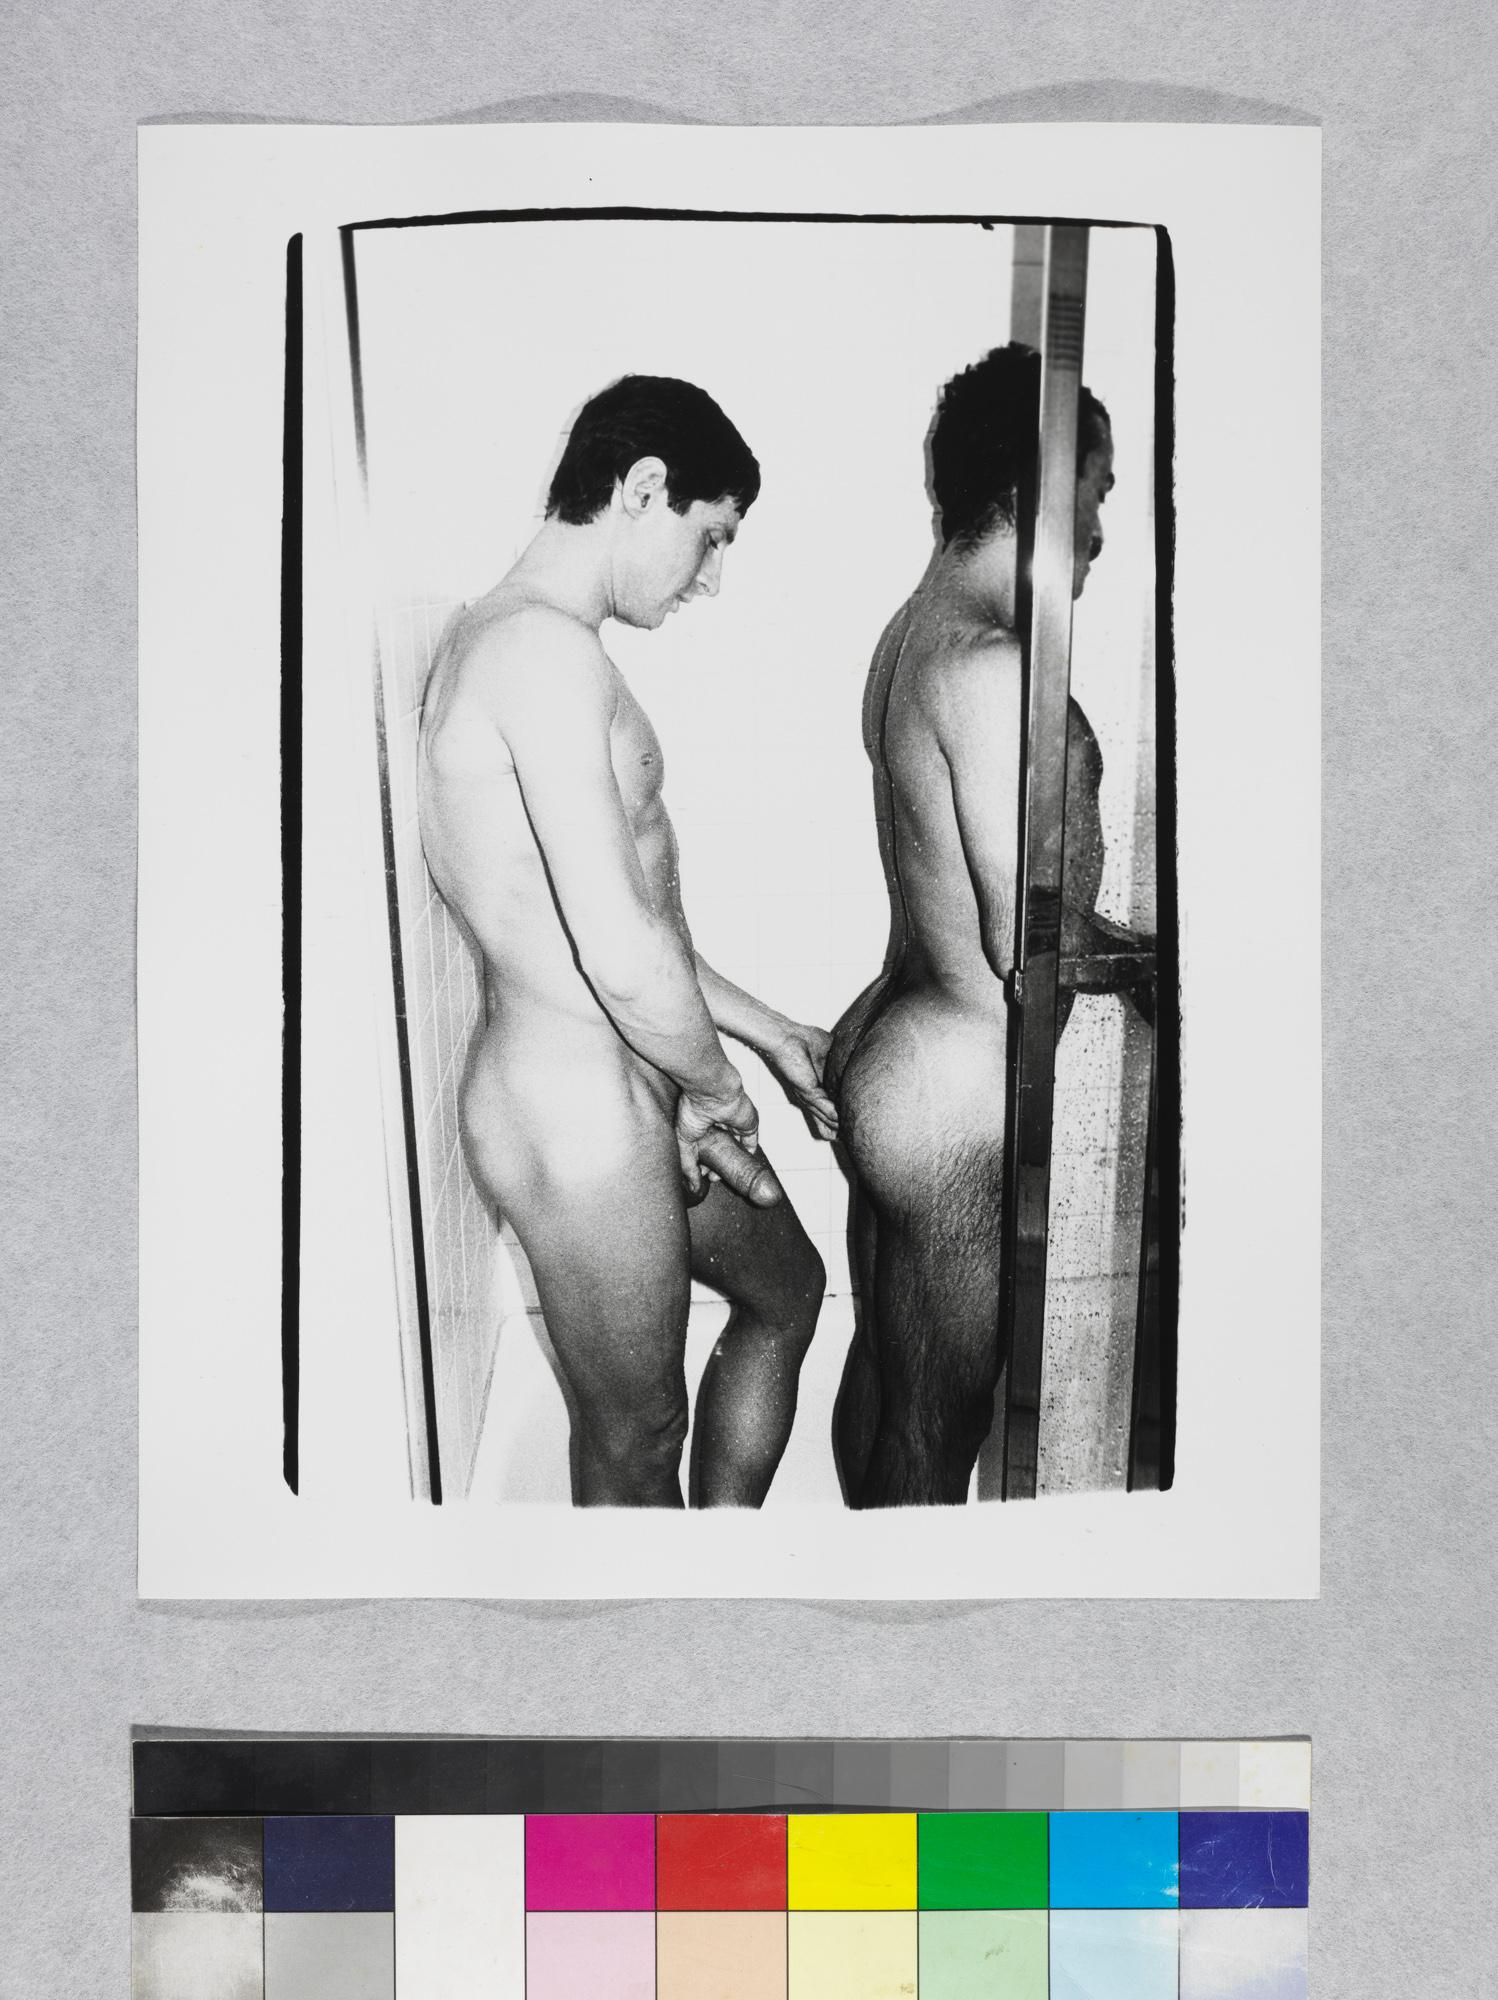 Gelatinesilberdruck von Victor Hugo und männlichem Modell im Schaufenster (Pop-Art), Photograph, von Andy Warhol